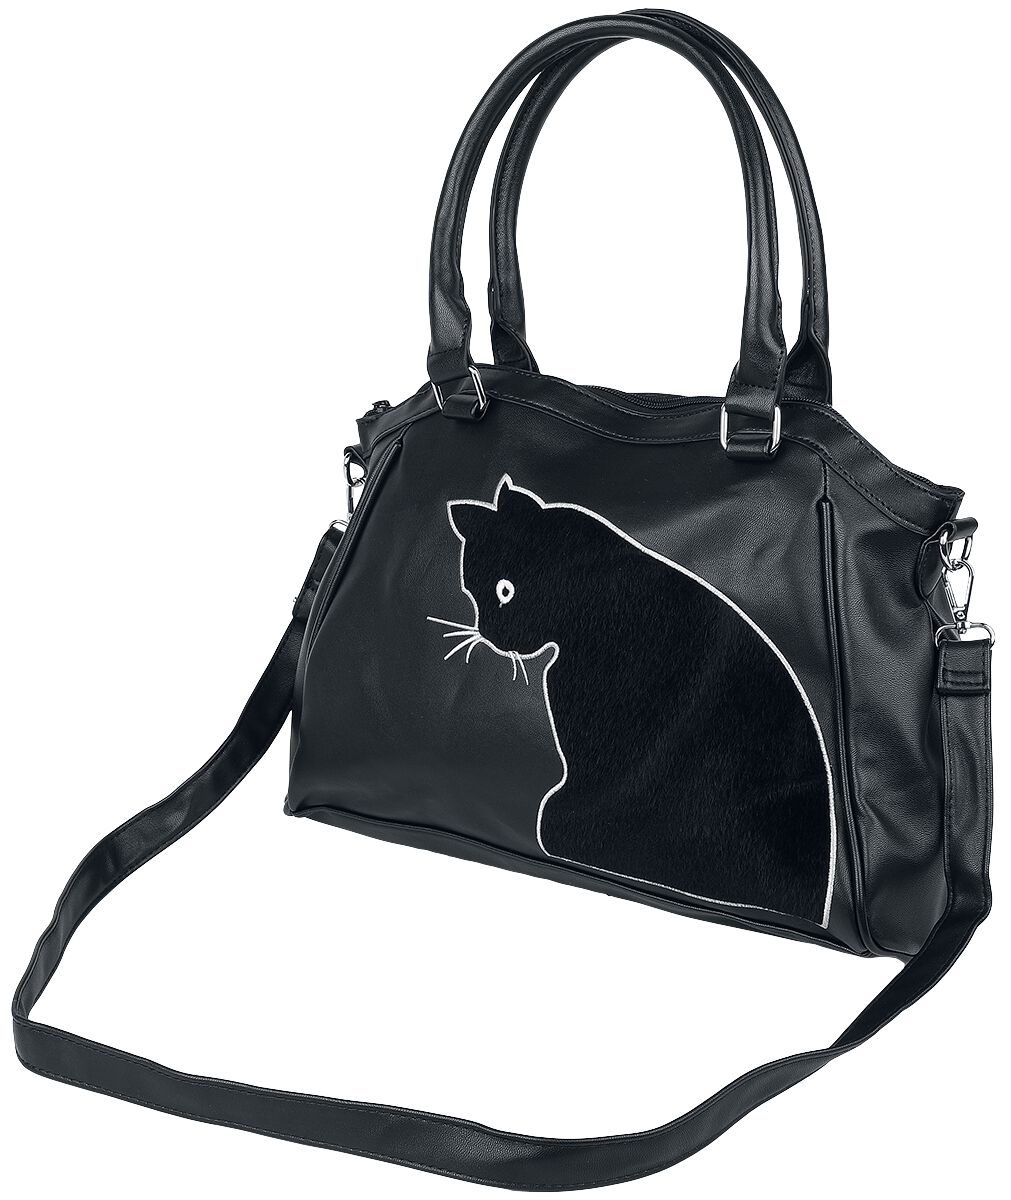 Banned Alternative - Gothic Handtasche - Sabrina - für Damen - schwarz